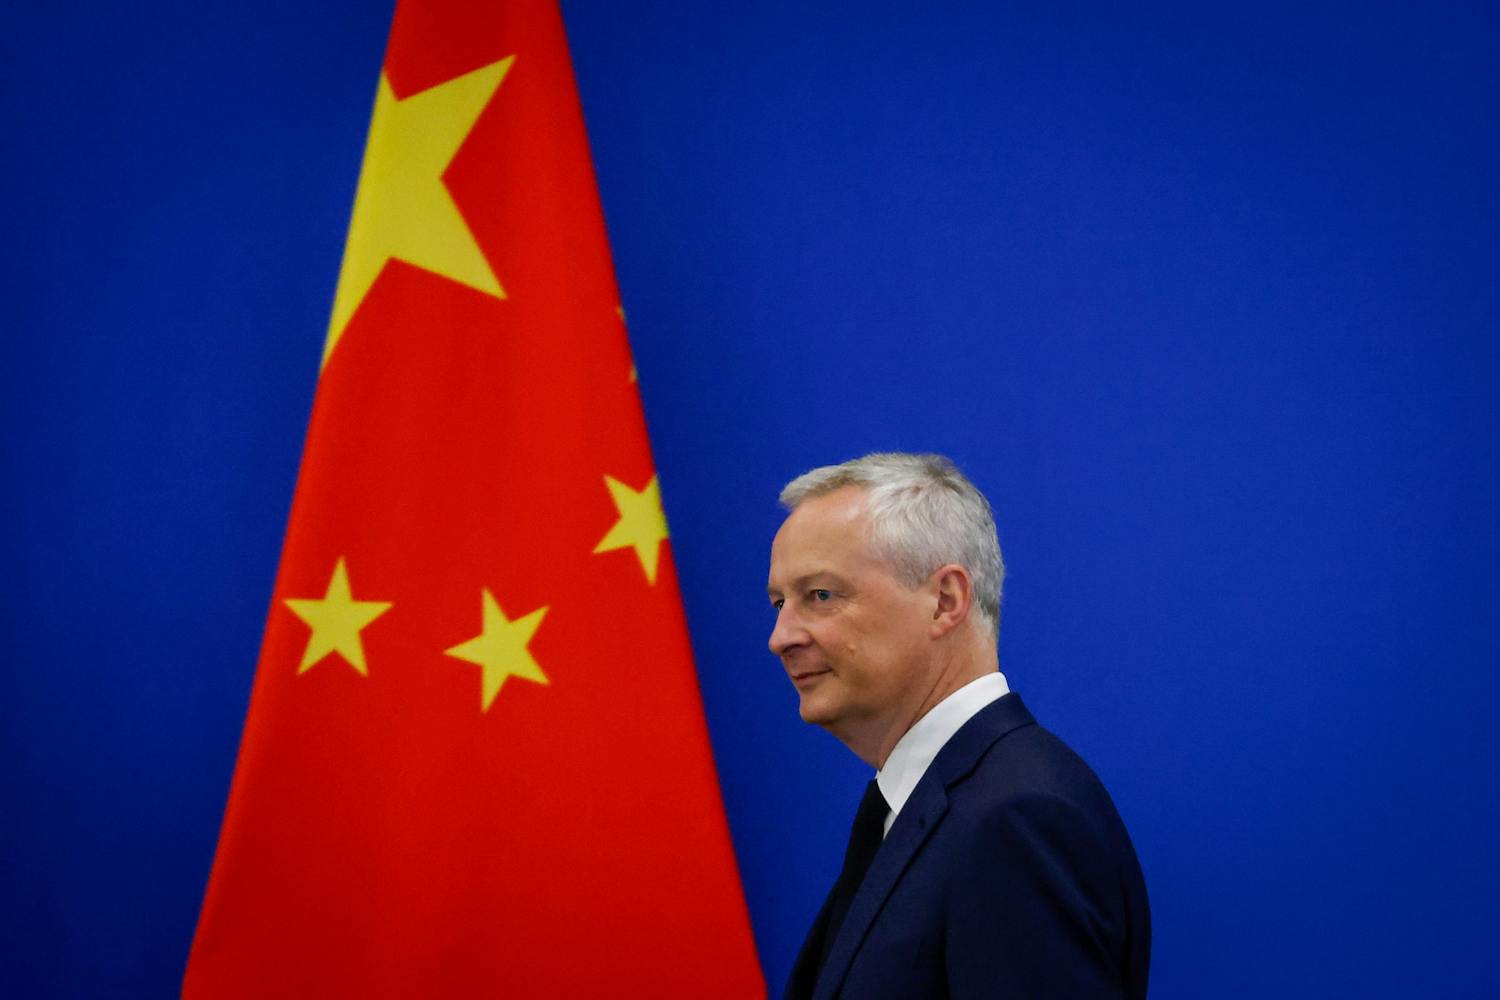 La France « suit sa propre voie » et renforce ses liens avec la Chine